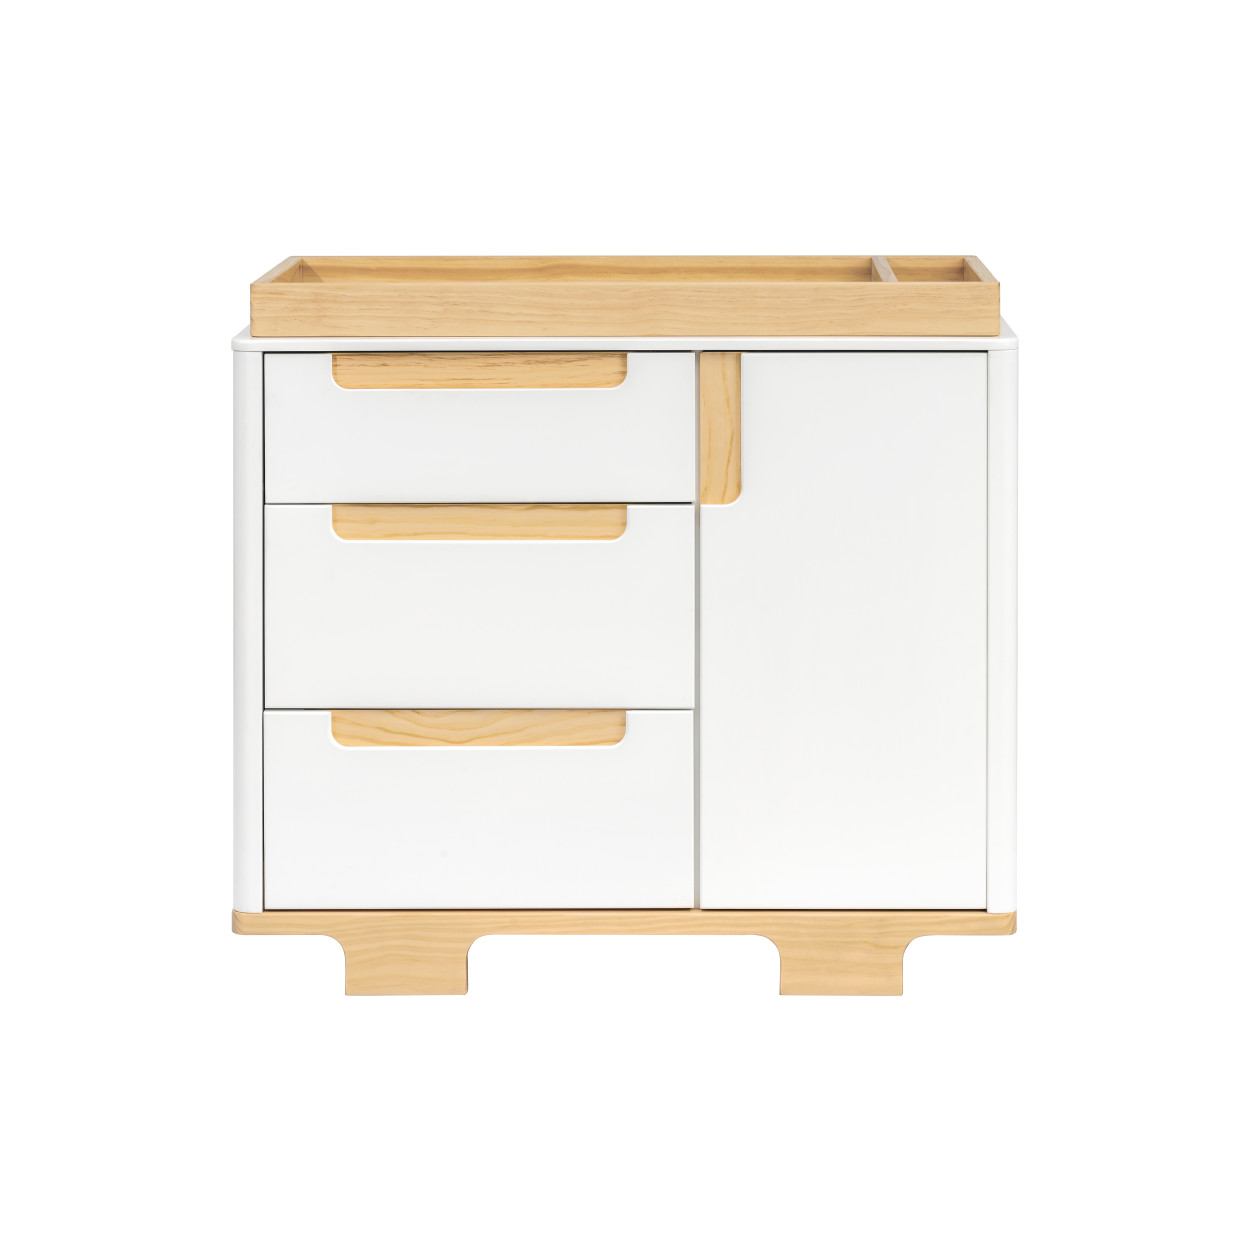 BabyLetto Yuzu 3-Drawer Changer Dresser - White/Natural